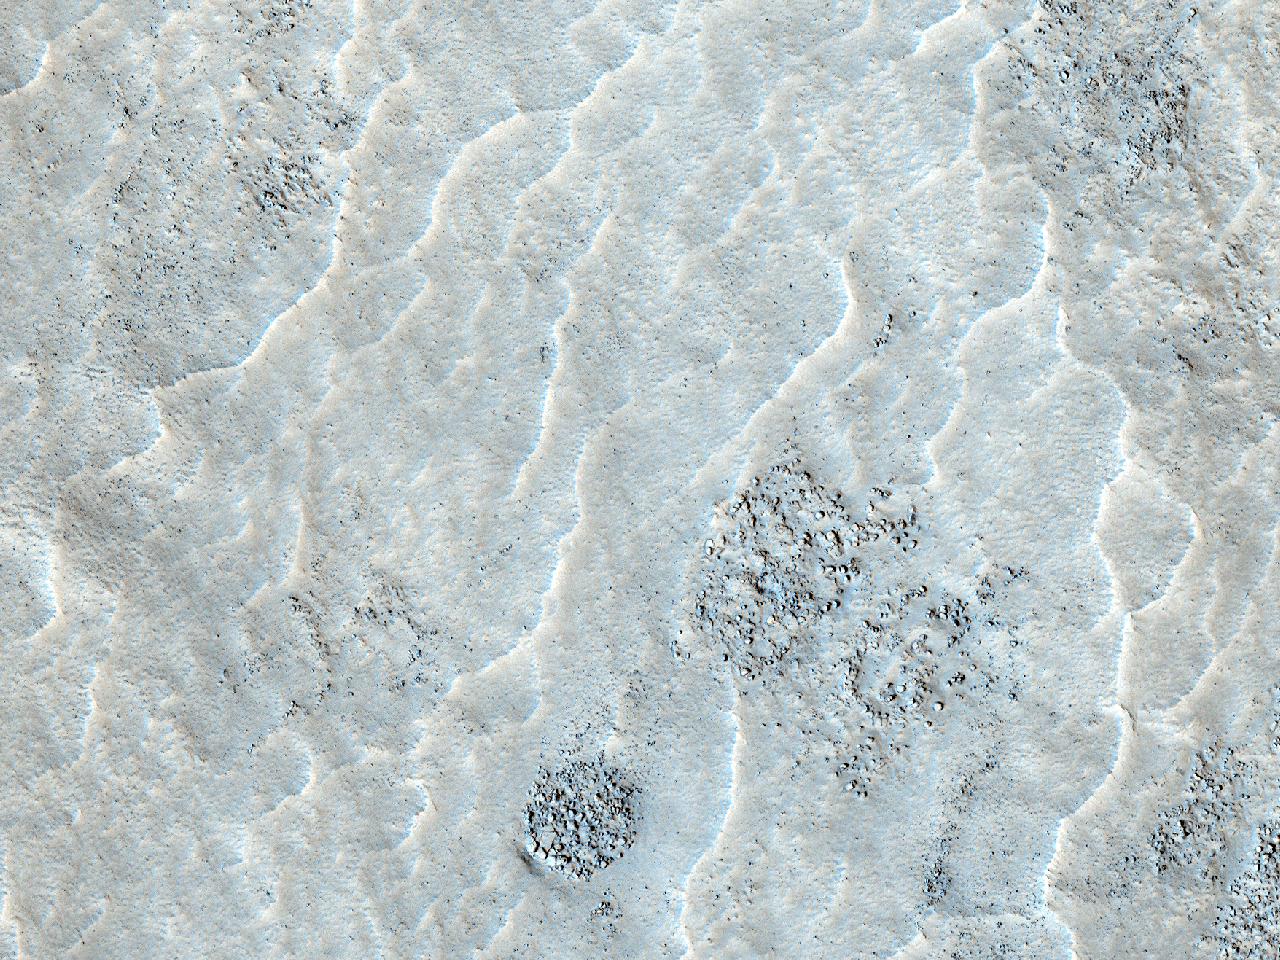 Terreno em Acidalia Planitia